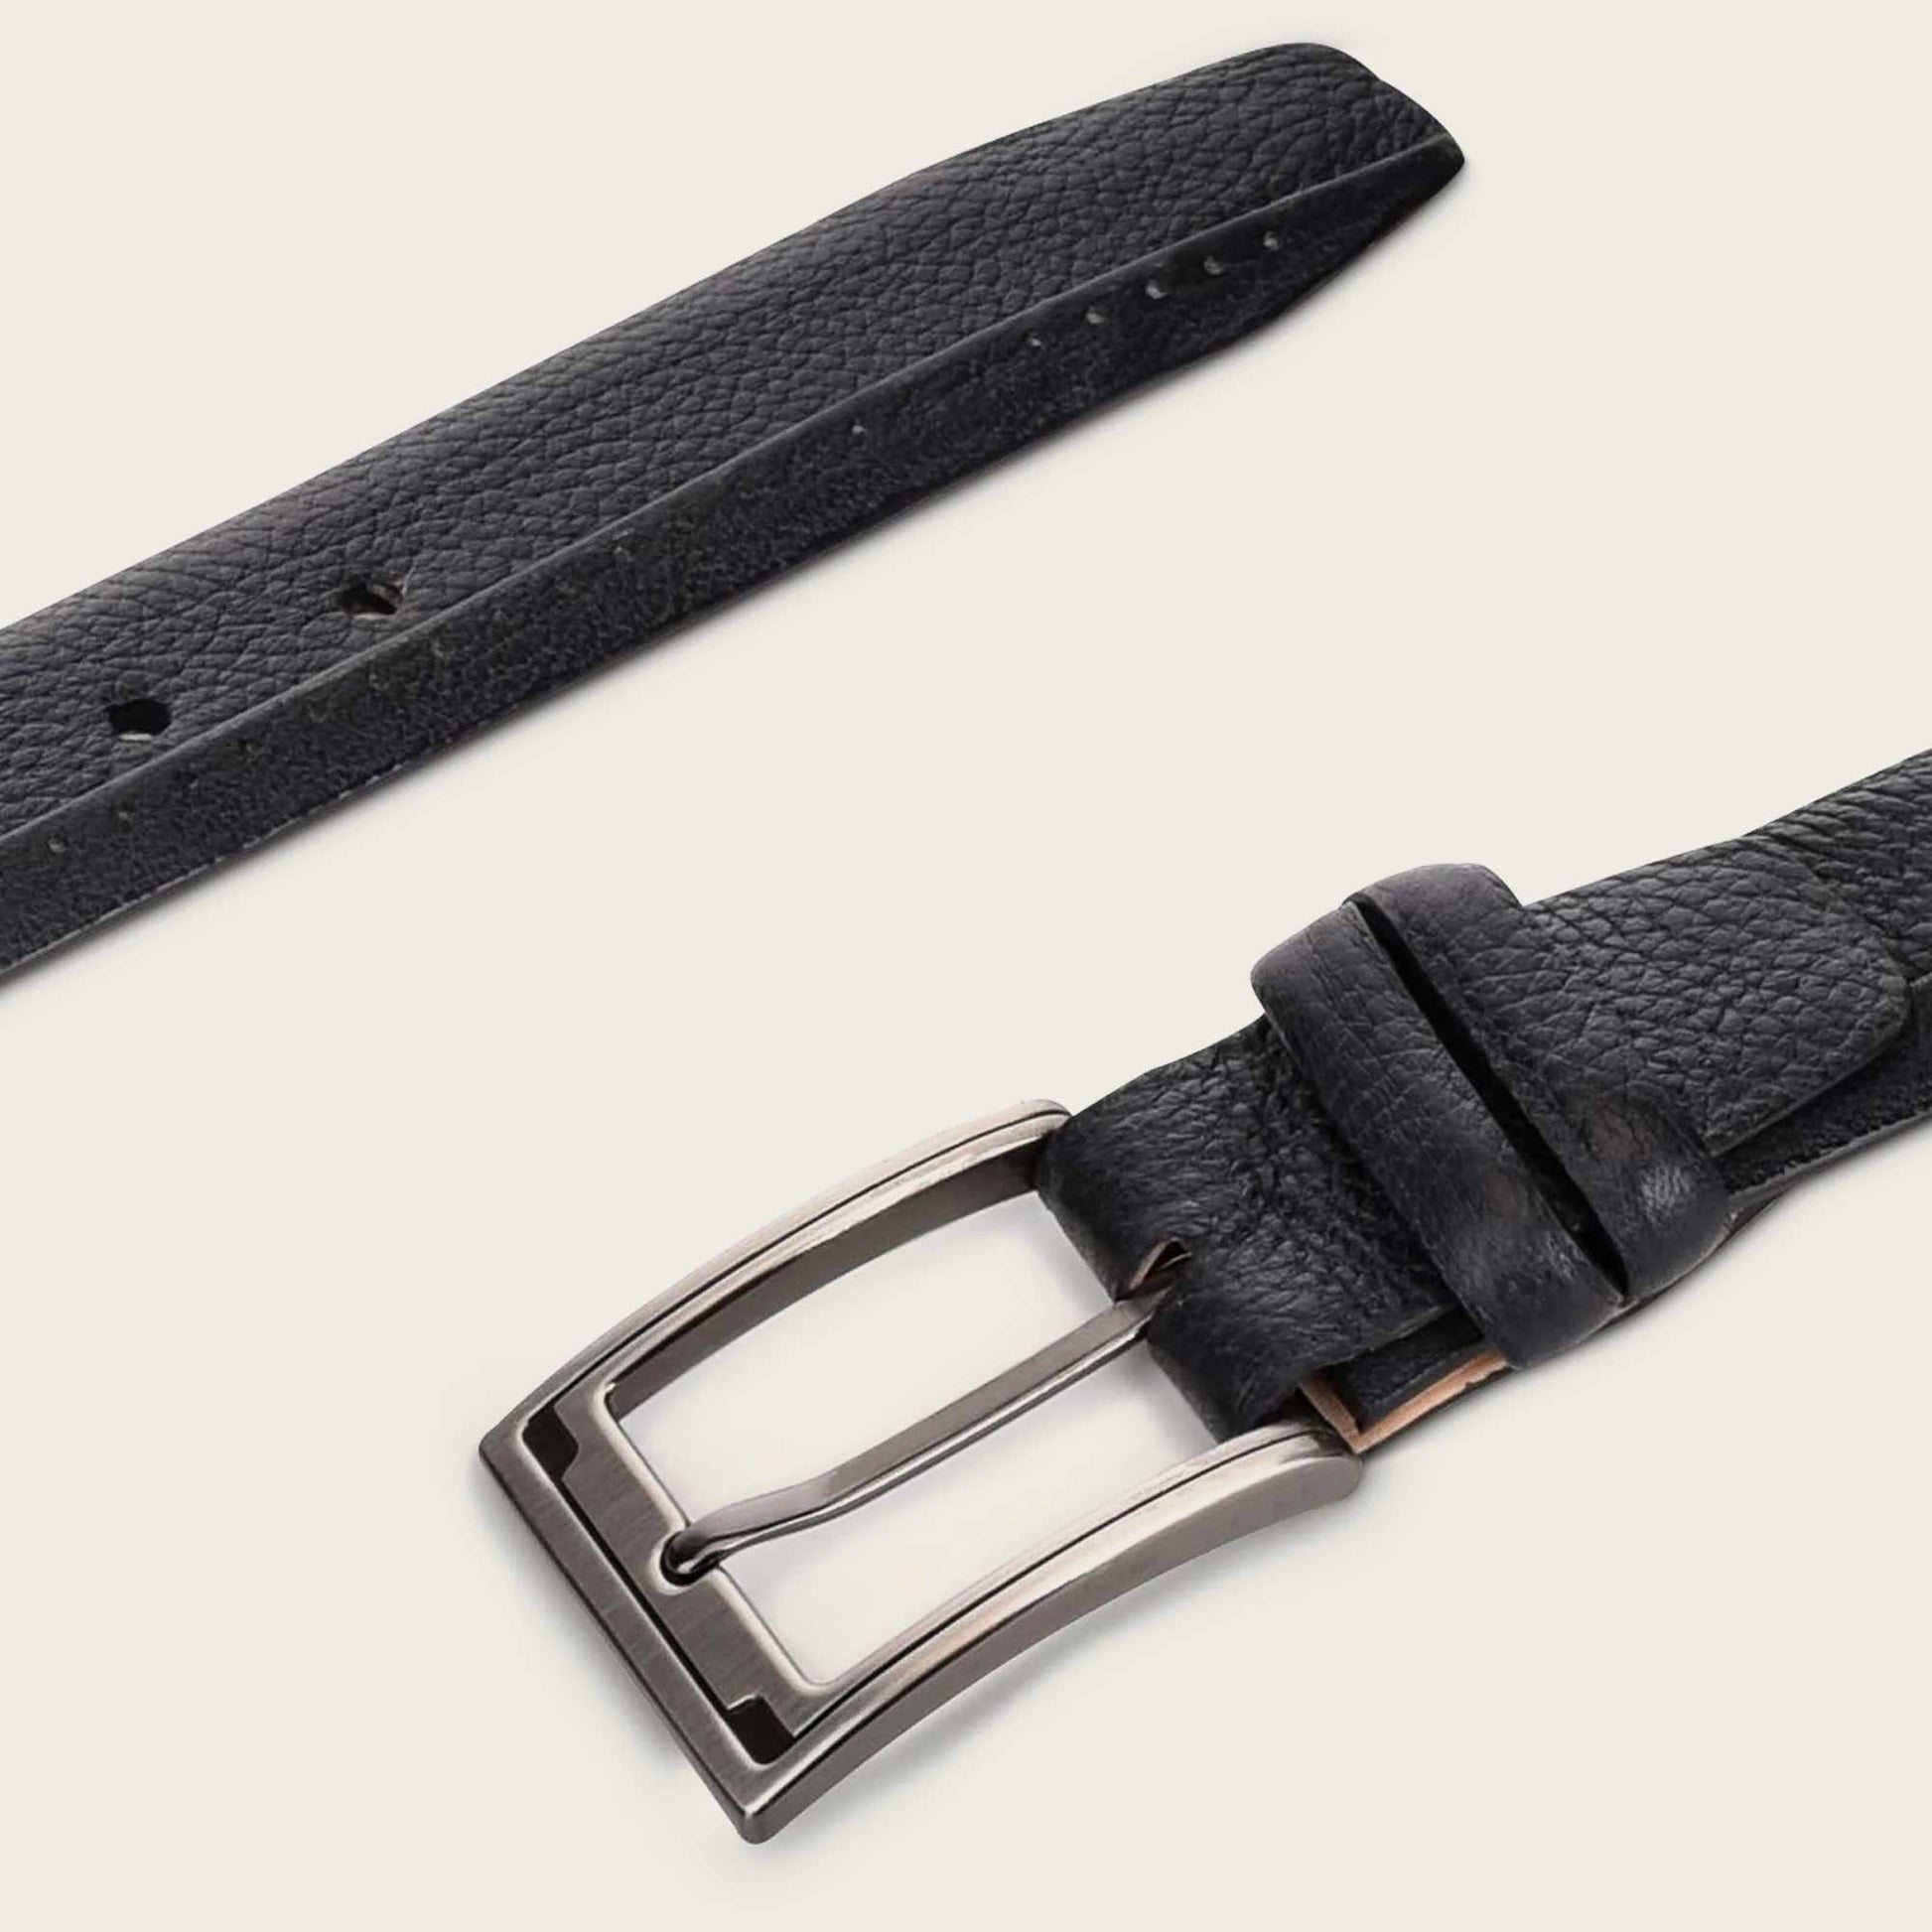 Premium Tatic 35MM Reversible Belt